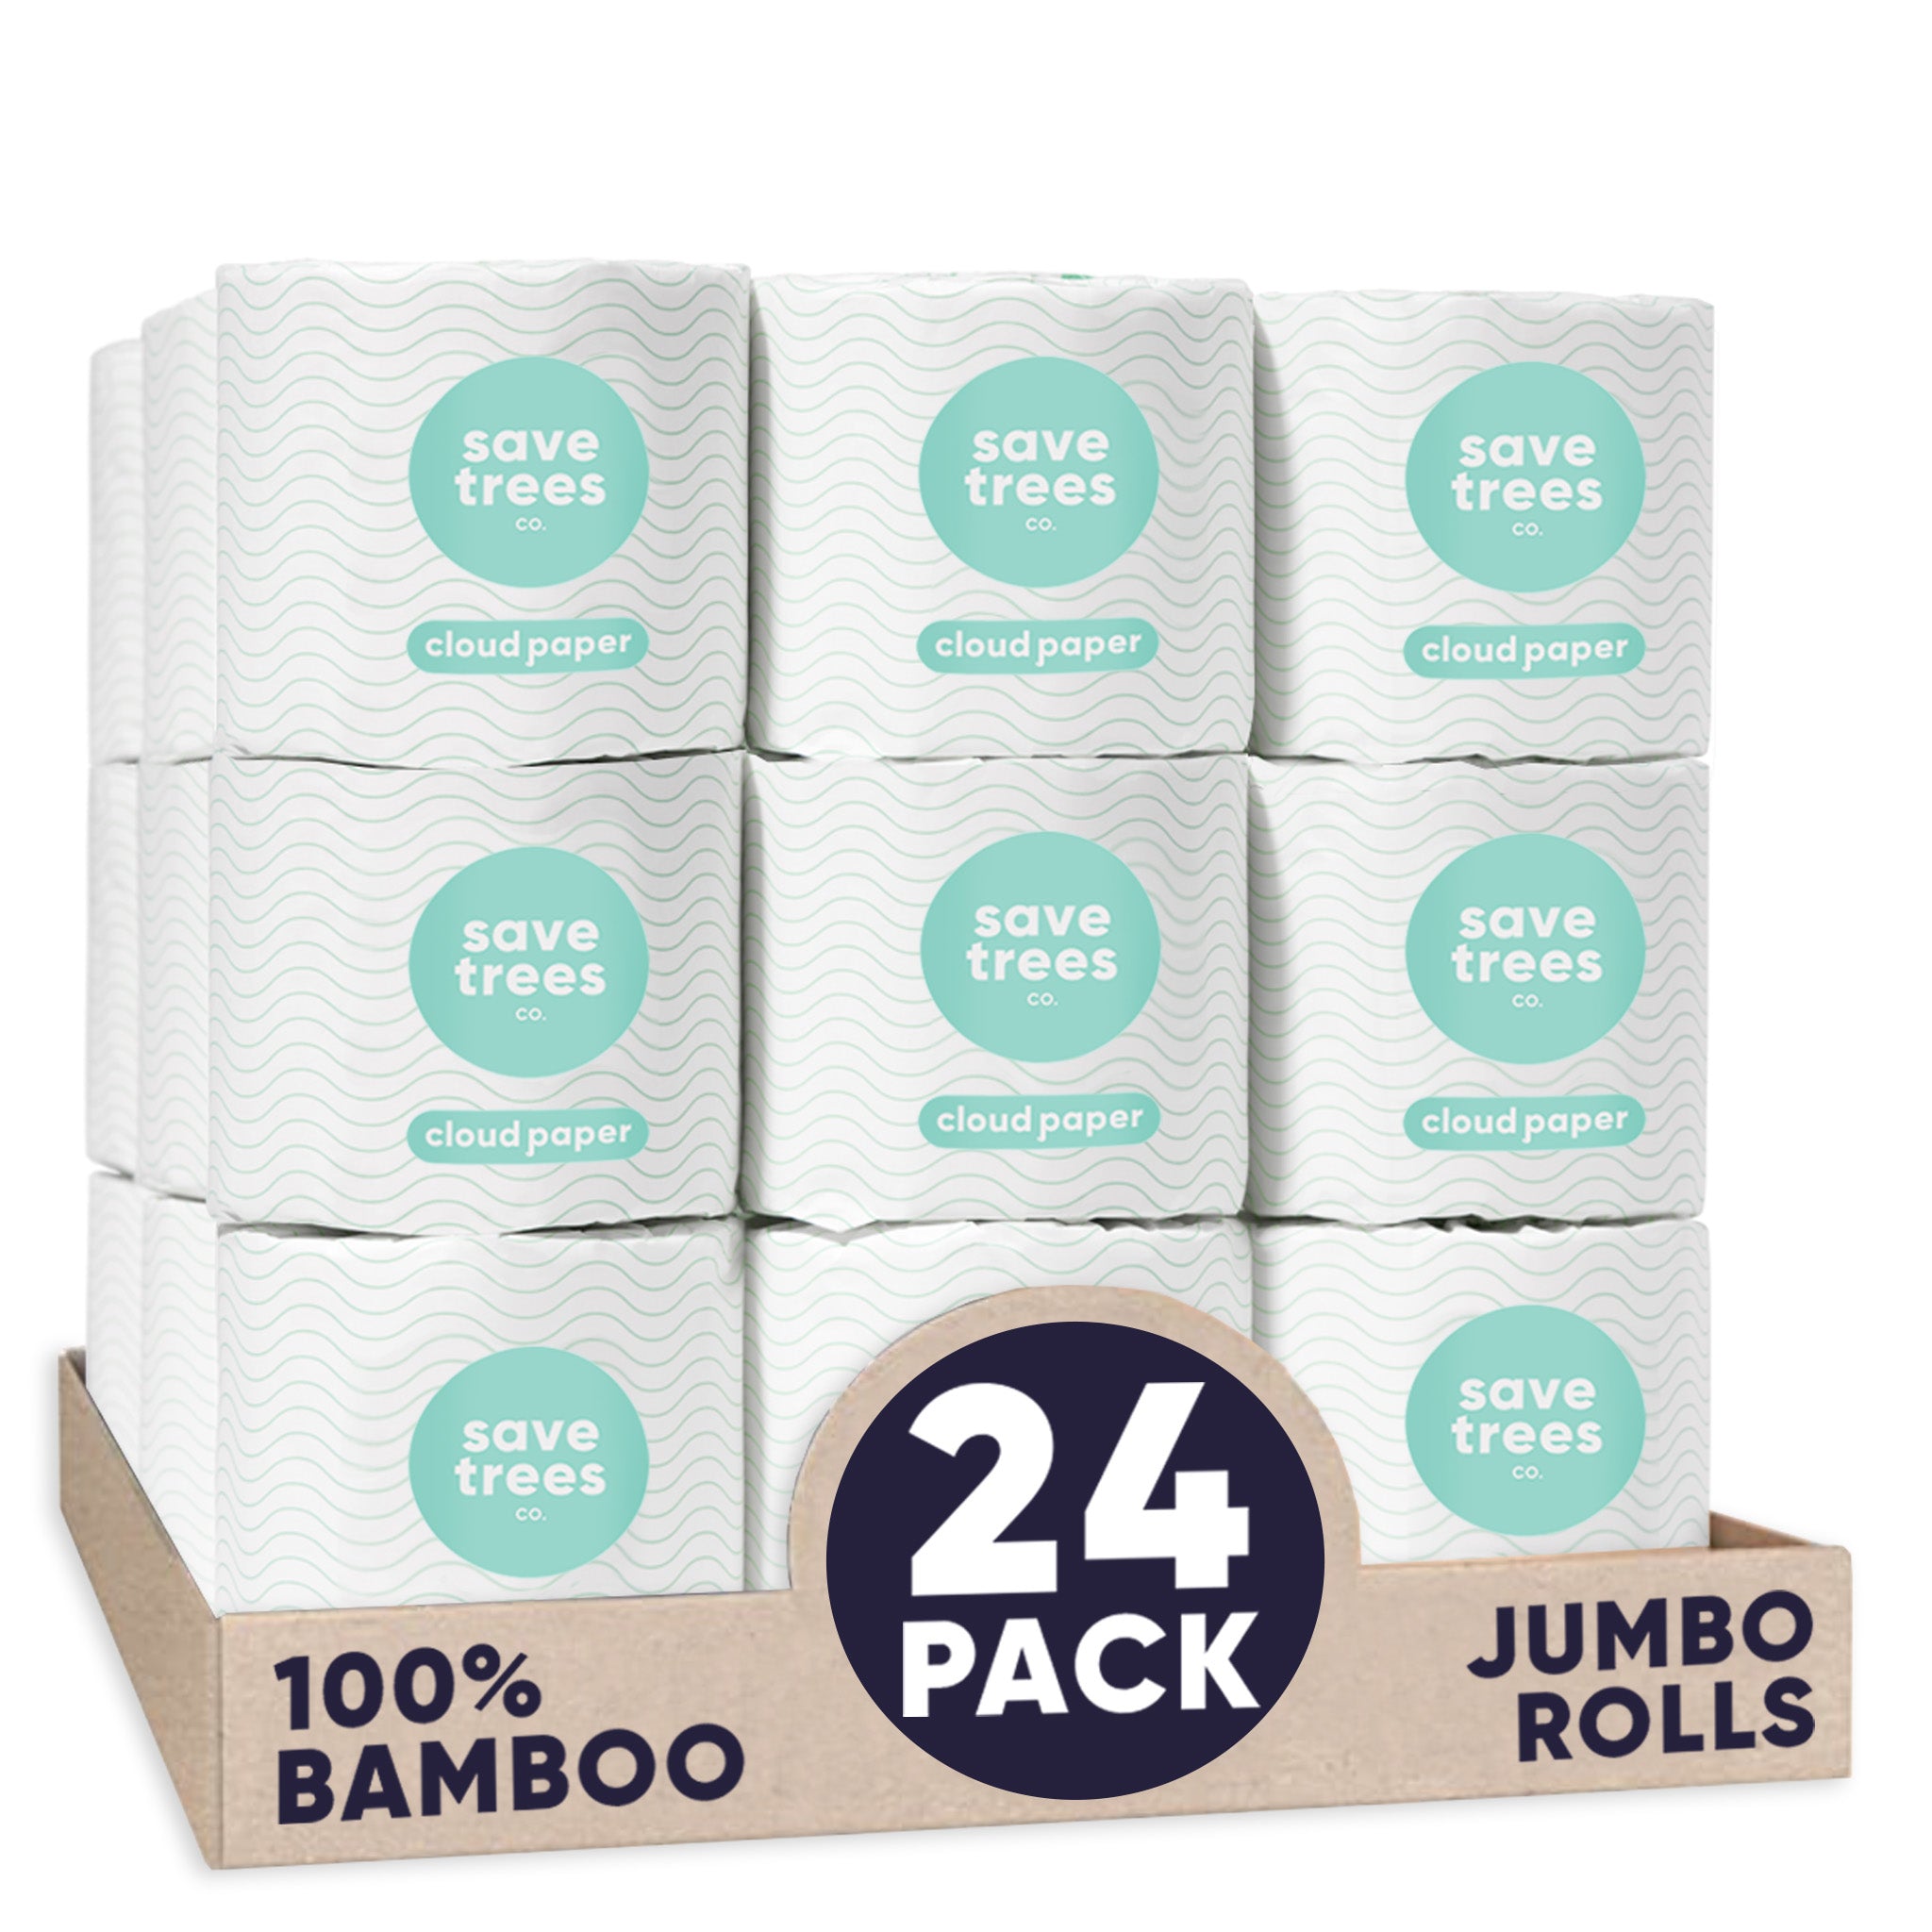 Reel Paper: Bamboo Toilet Paper, 4 Pk